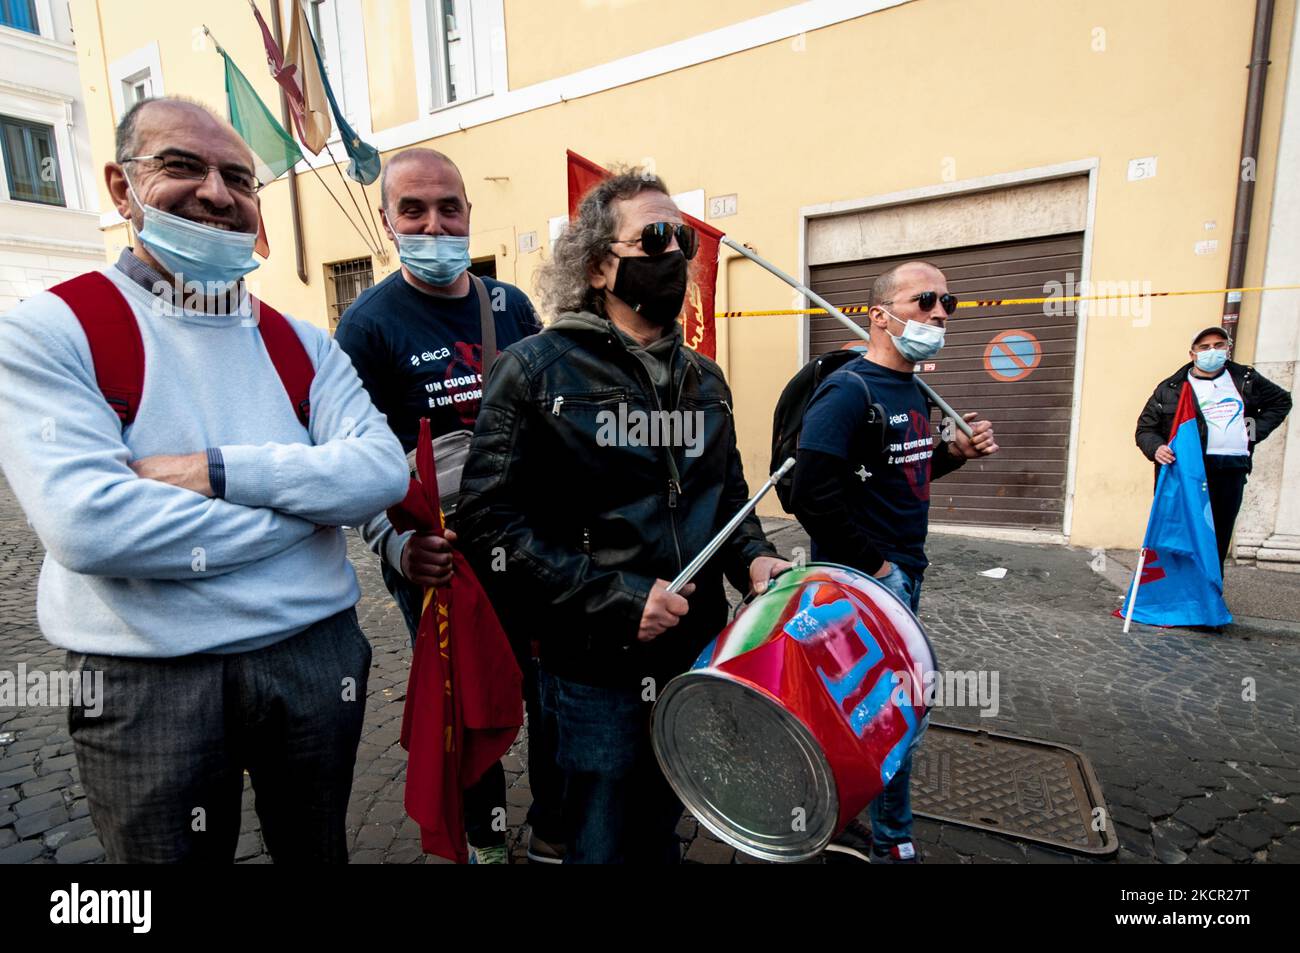 Hunderte von Arbeitern aus Whirlpool in Neapel und Elica in Anconara protestierten unter dem Ministerium für wirtschaftliche Entwicklung (Mise) gegen Entlassungen der Unternehmen und forderten die Regierung am 19. Oktober 2021 in Rom, Italien, um Gewissheiten für die Zukunft. (Foto von Andrea Ronchini/NurPhoto) Stockfoto